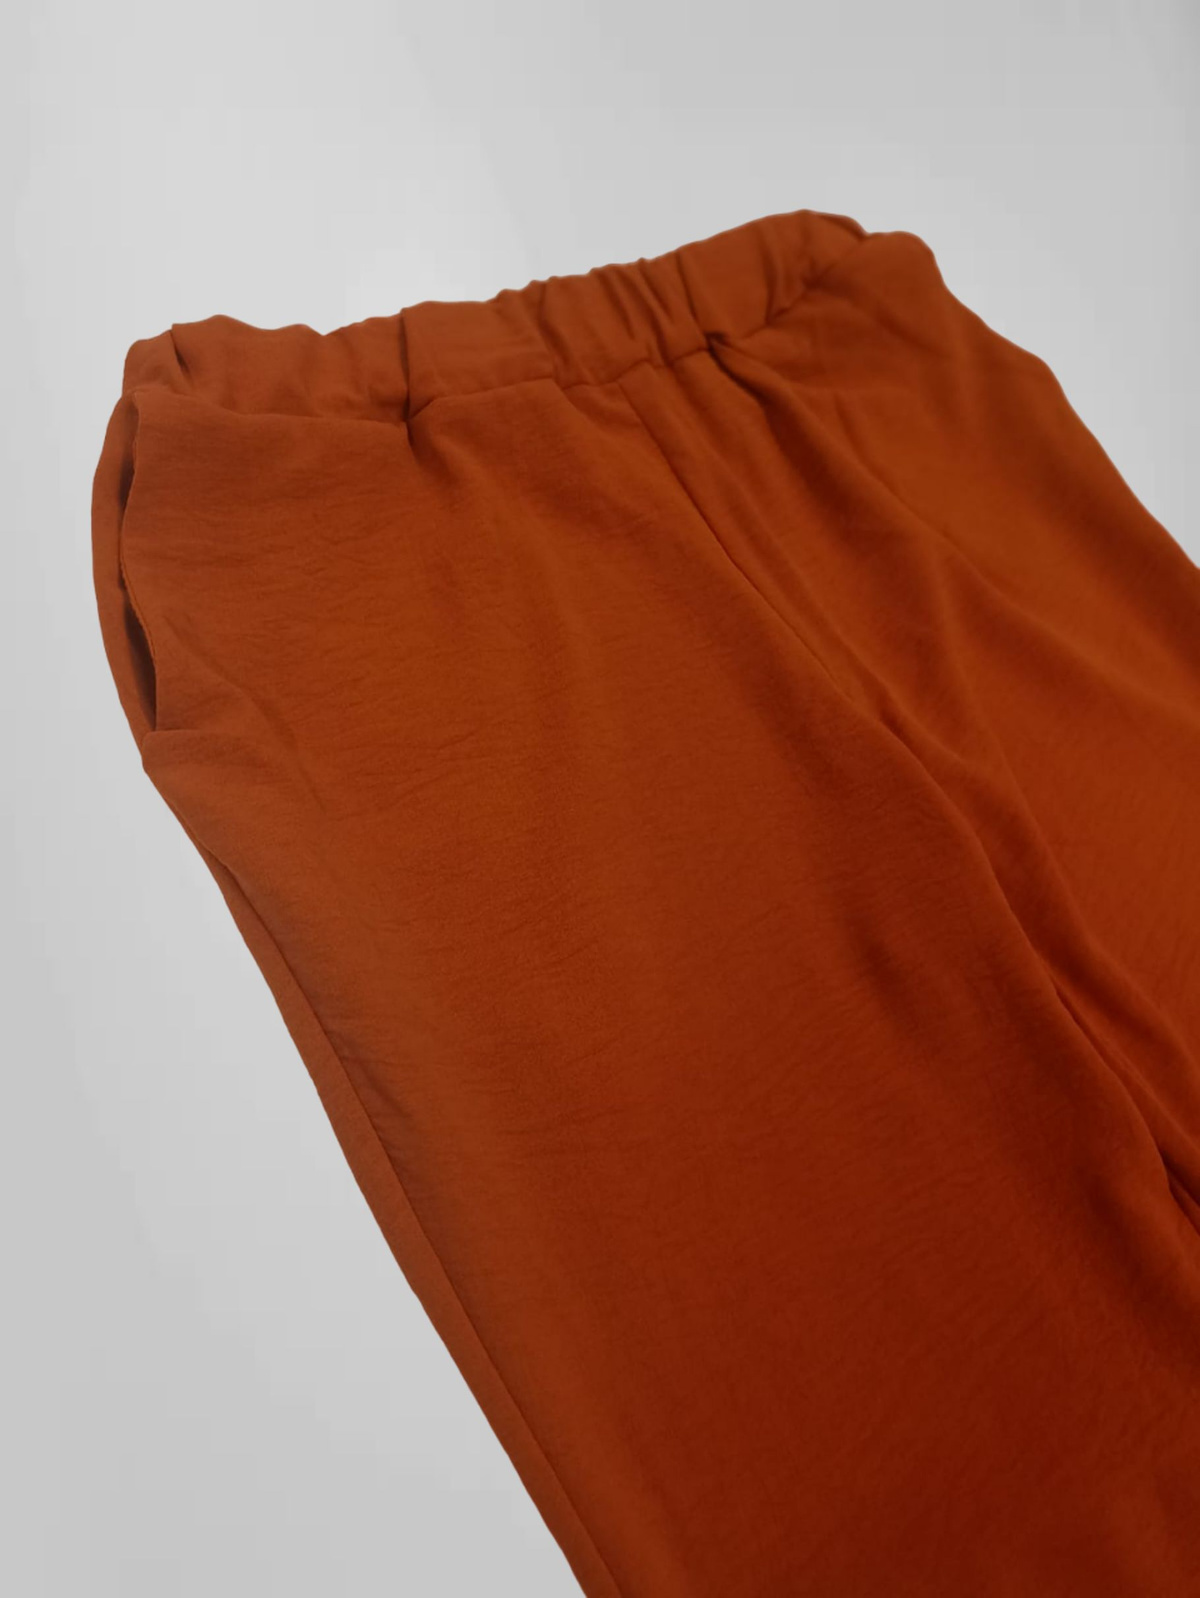 В пояс брюк вшита широкая резинка, обеспечивающая удобную посадку. По бокам брюк сделаны рабочие карманы.